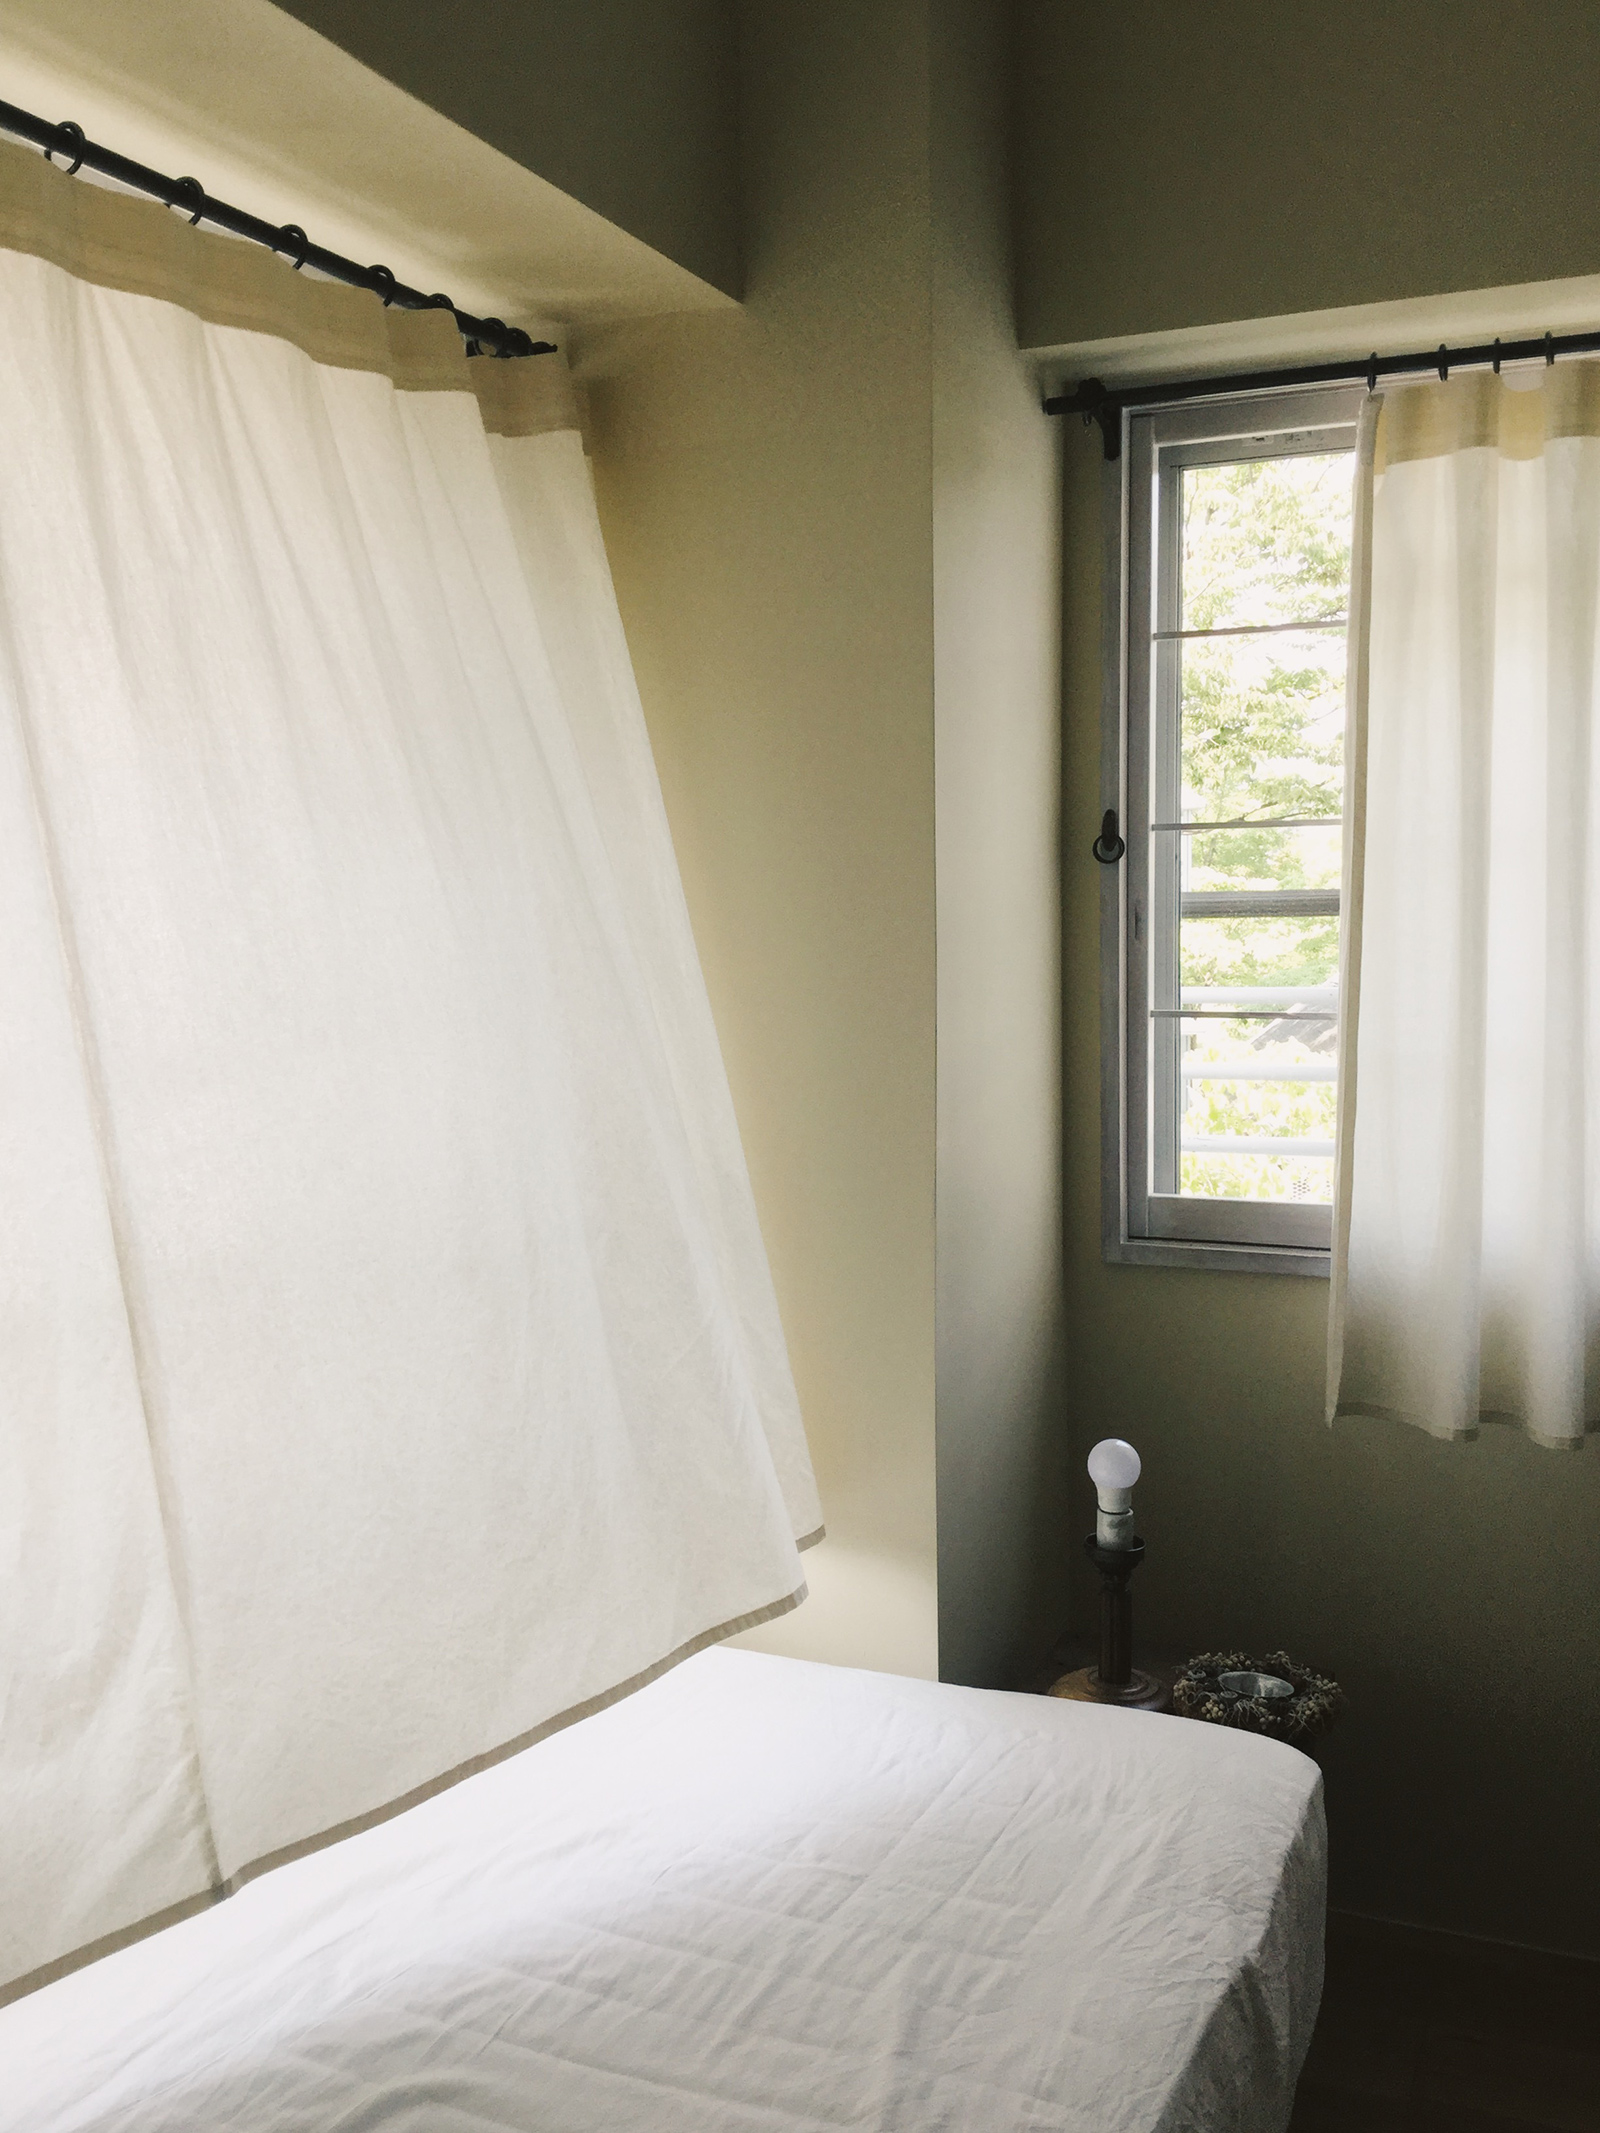 シーチングカーテン フラット スタイル DW-CB010-01-G114 生成りのシーチングカーテンで、寝室にナチュラルな気持ち良さを